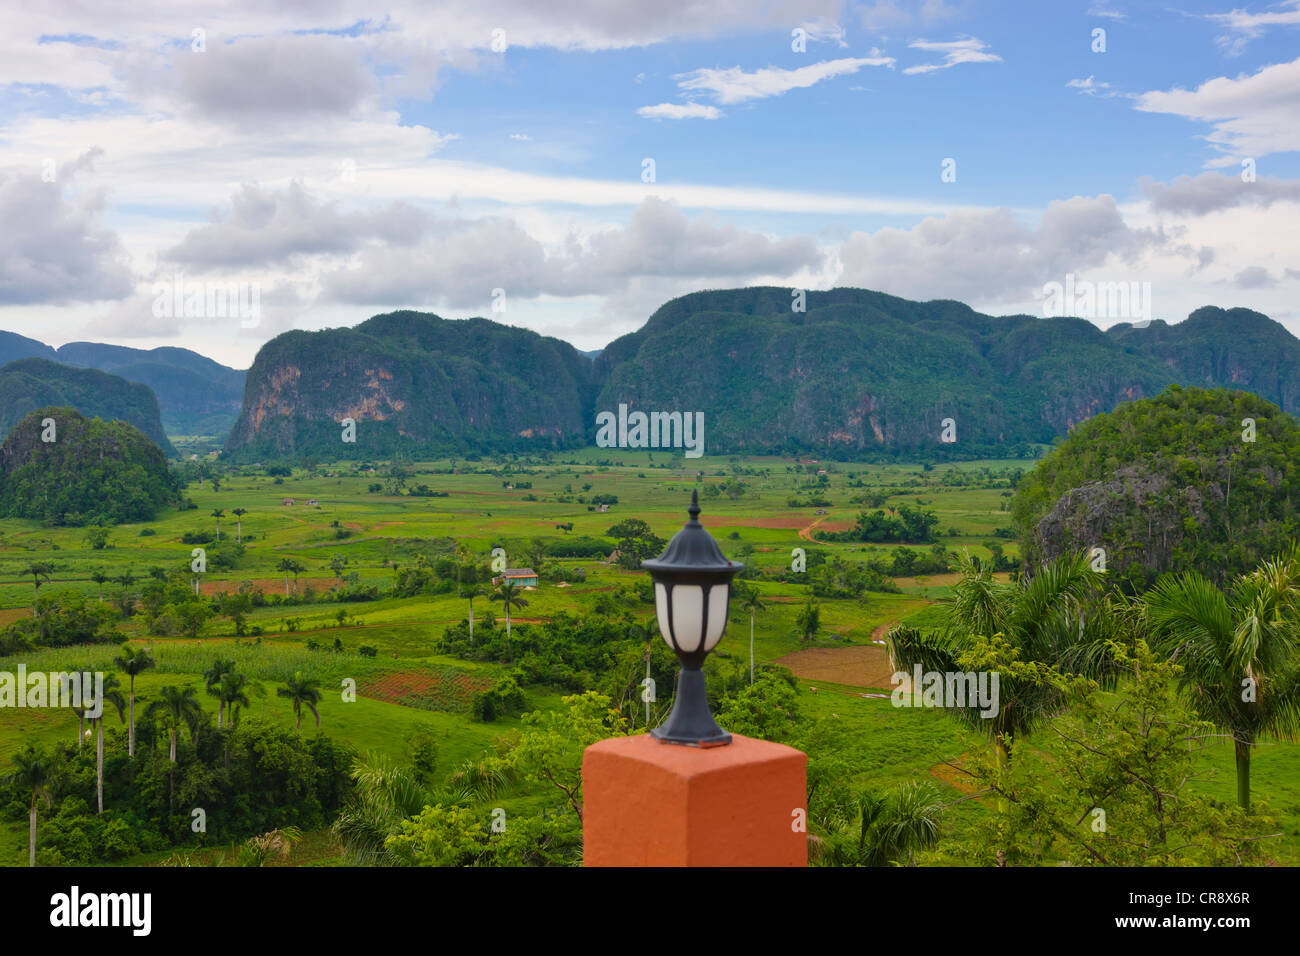 Kalkstein-Hügel und Ackerland in Vinales Tal, UNESCO-Weltkulturerbe, Kuba Stockfoto